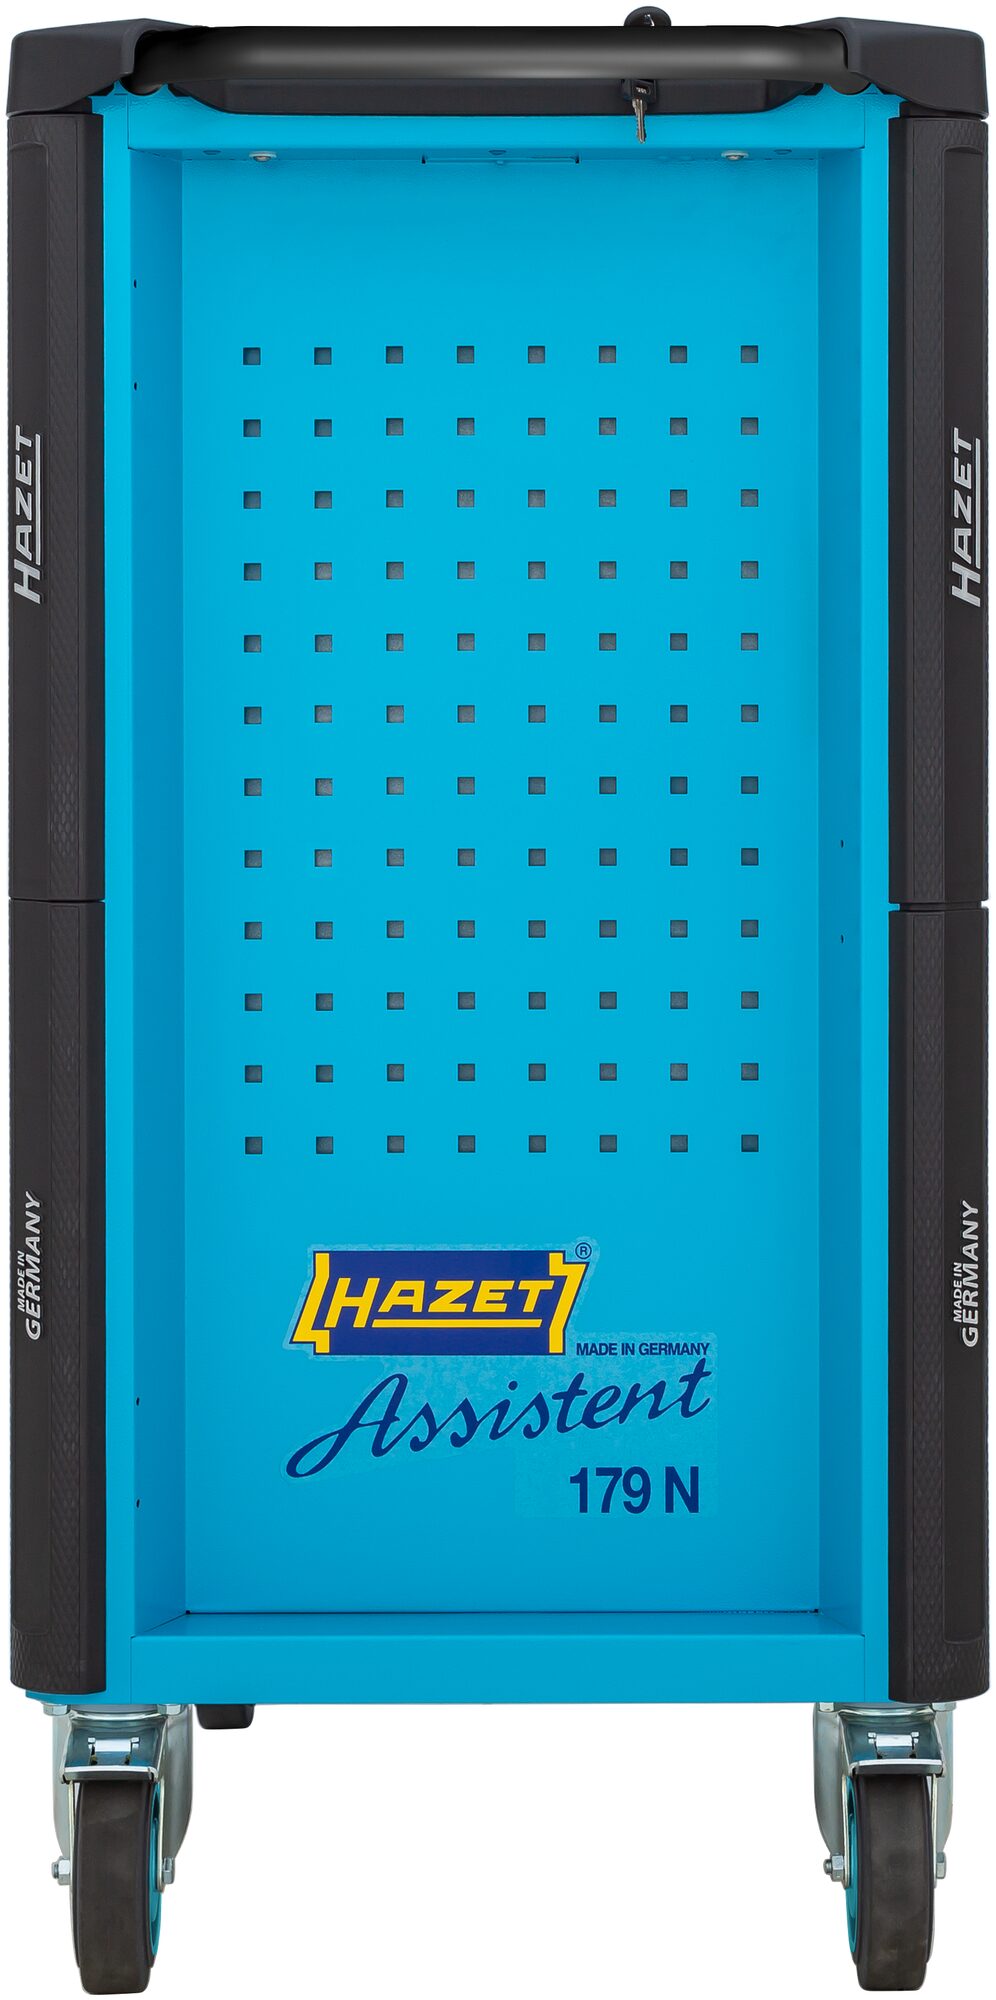 HAZET Werkstattwagen Assistent 179N-7